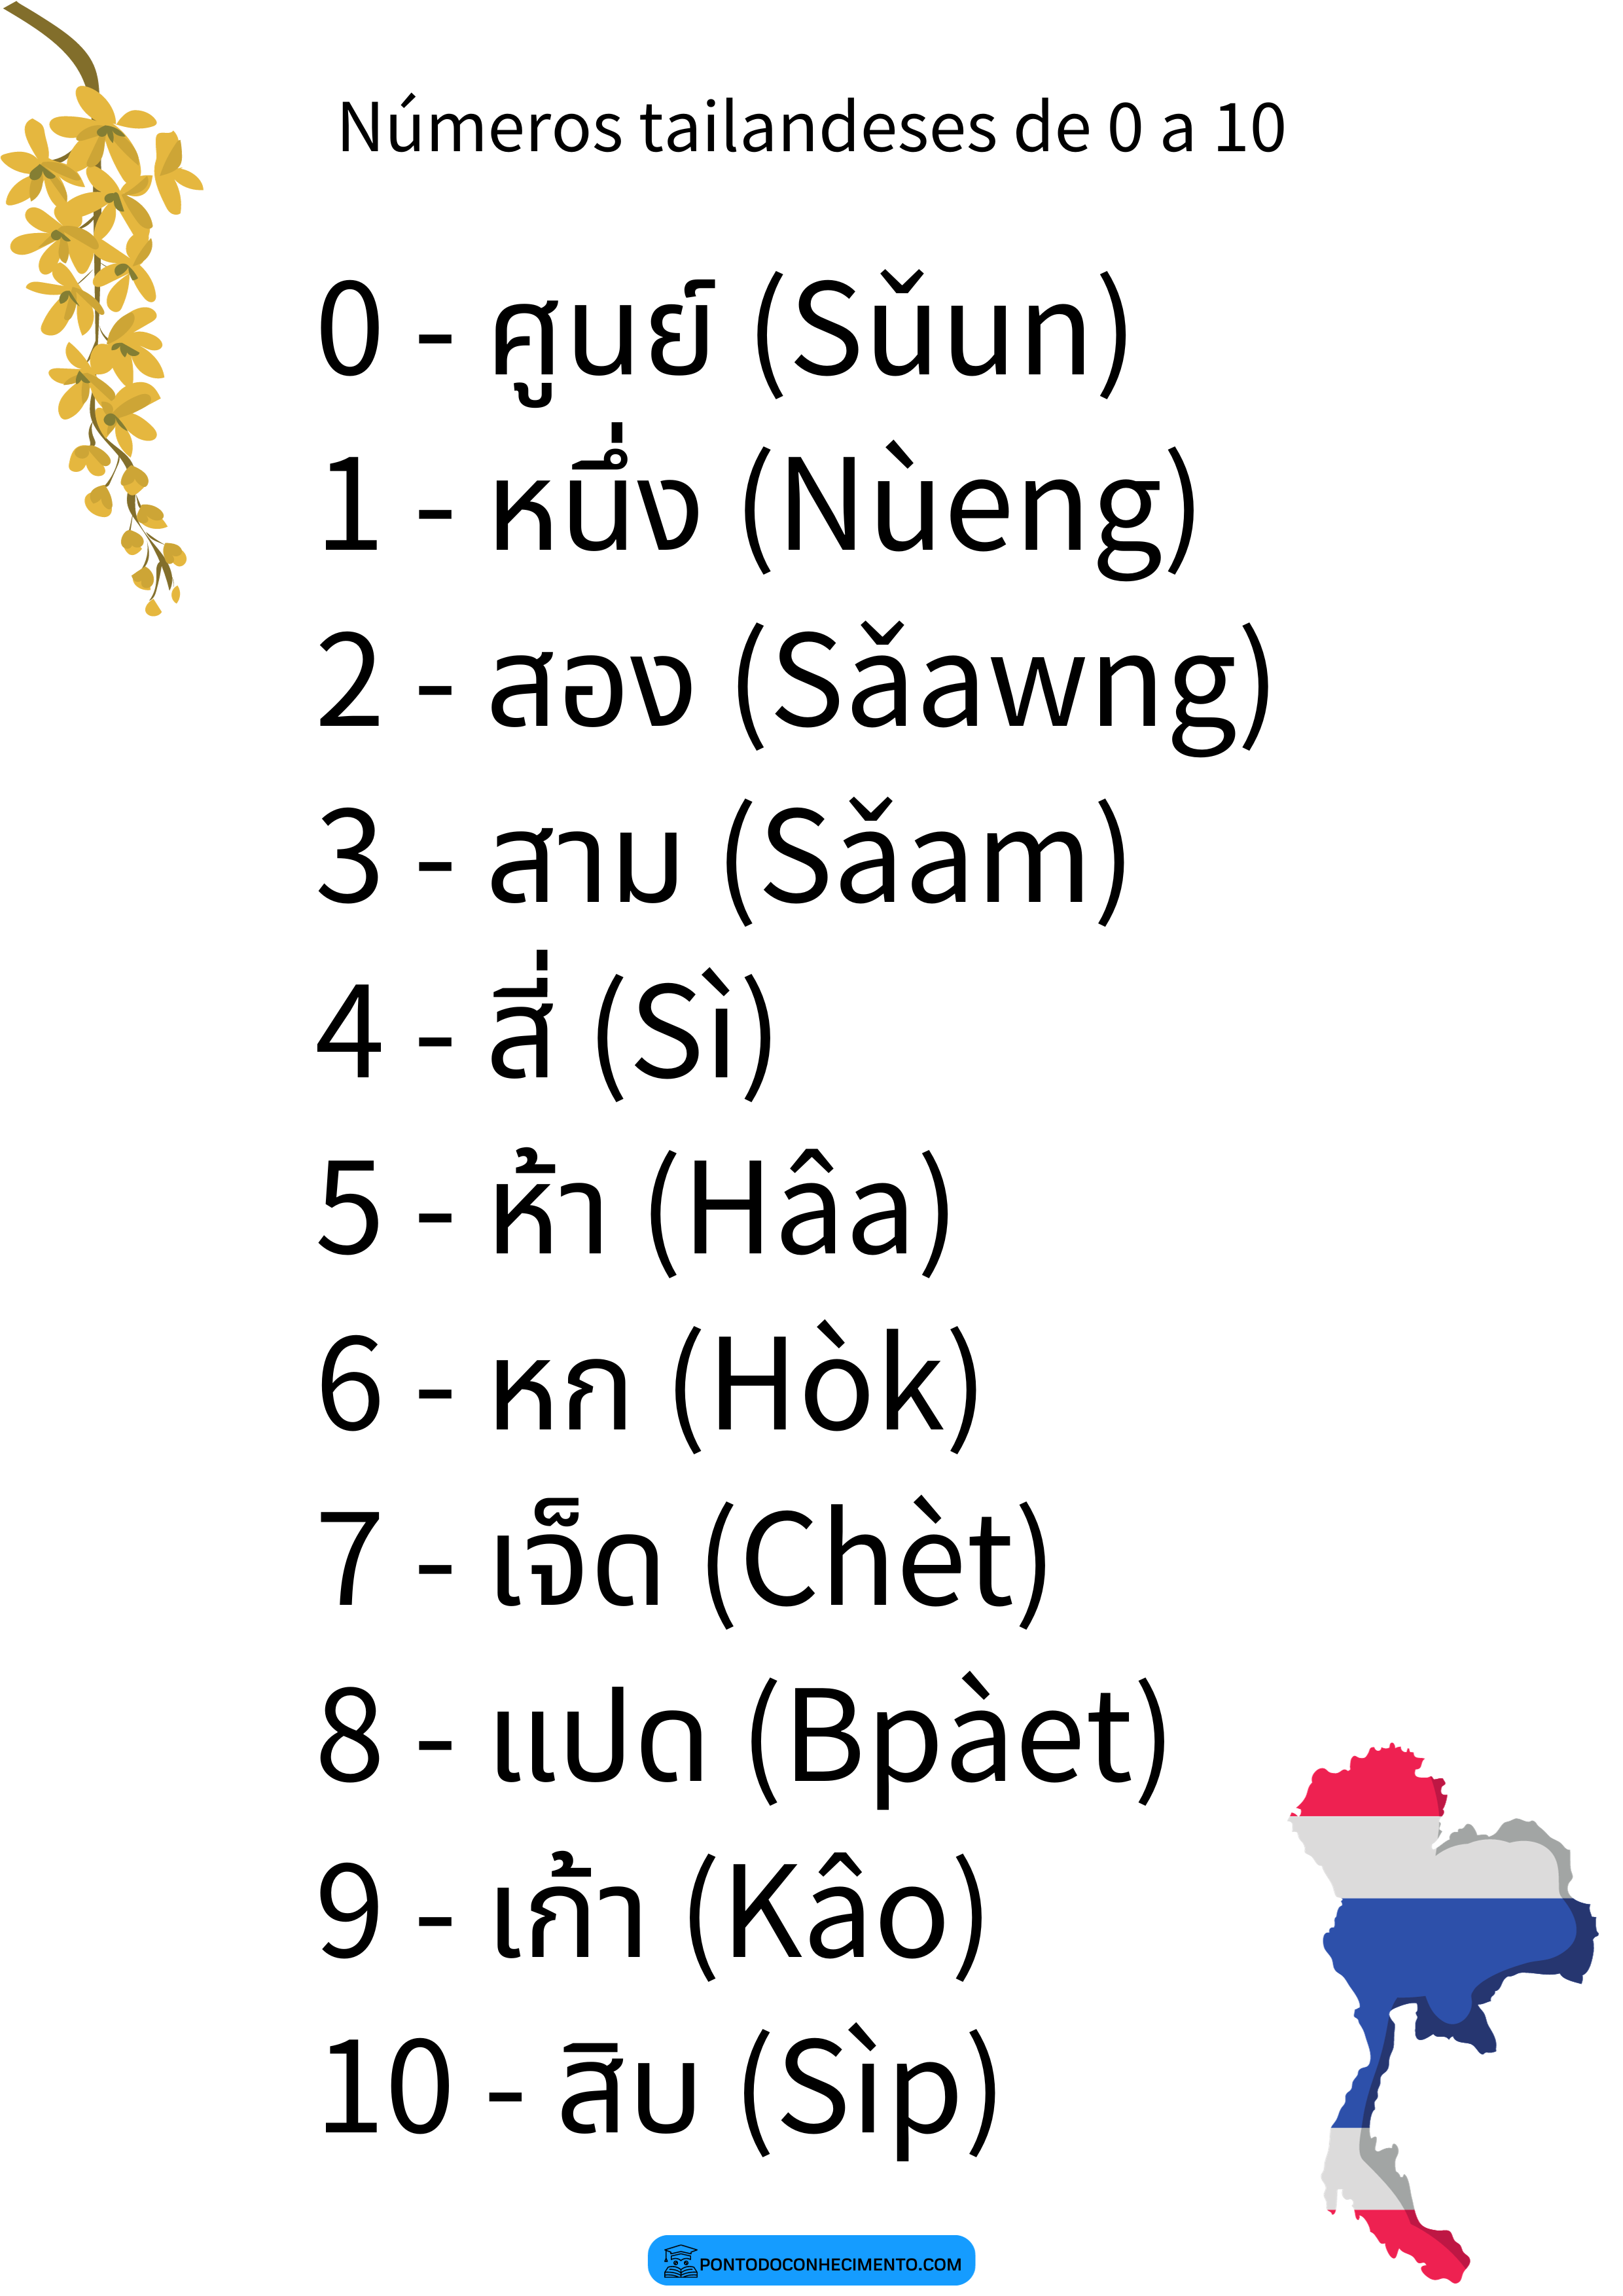 Números tailandeses